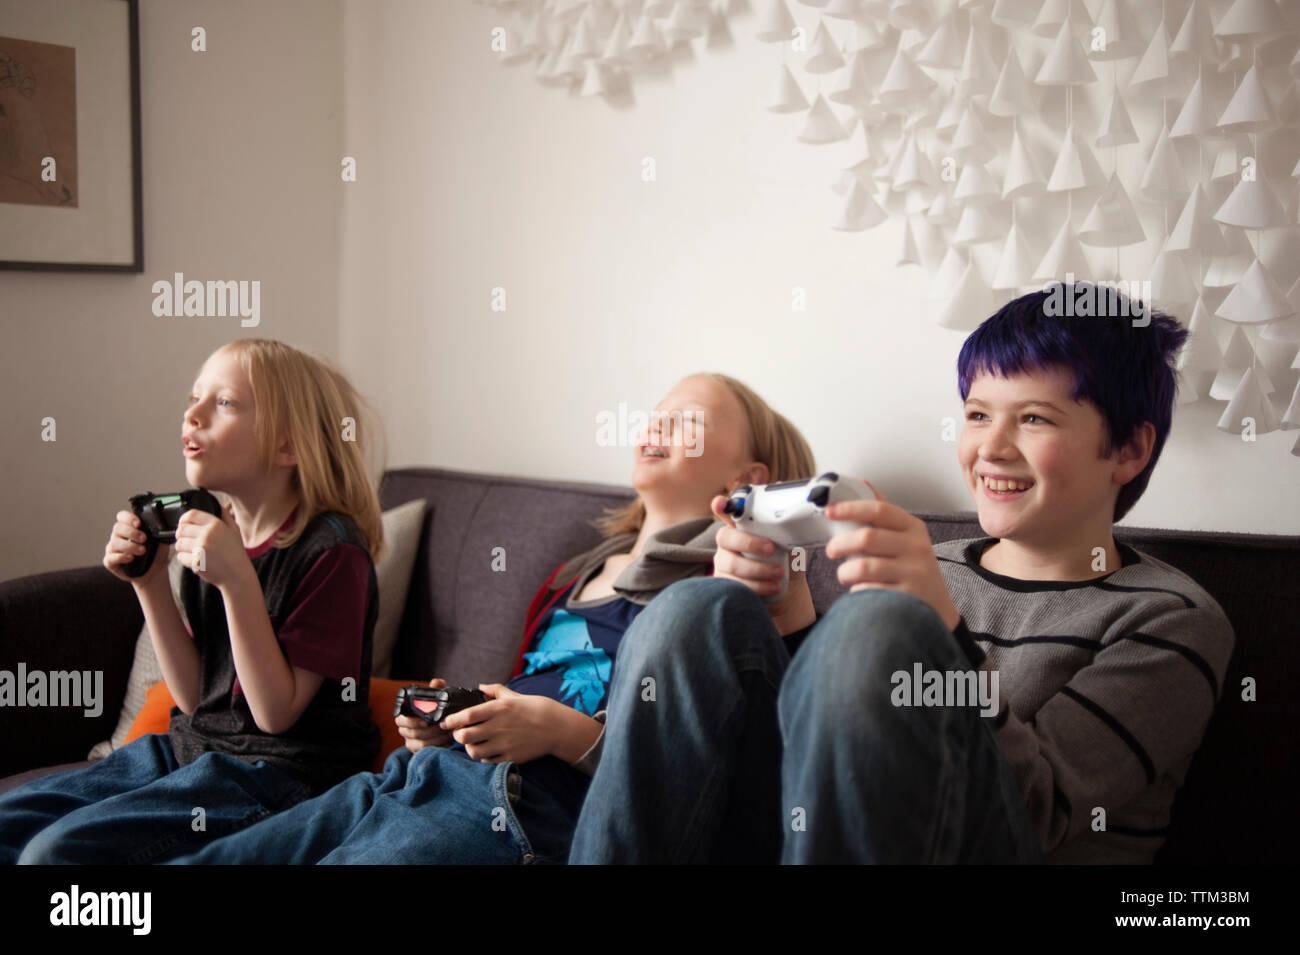 Garçons assis sur un canapé et playing video game Banque D'Images